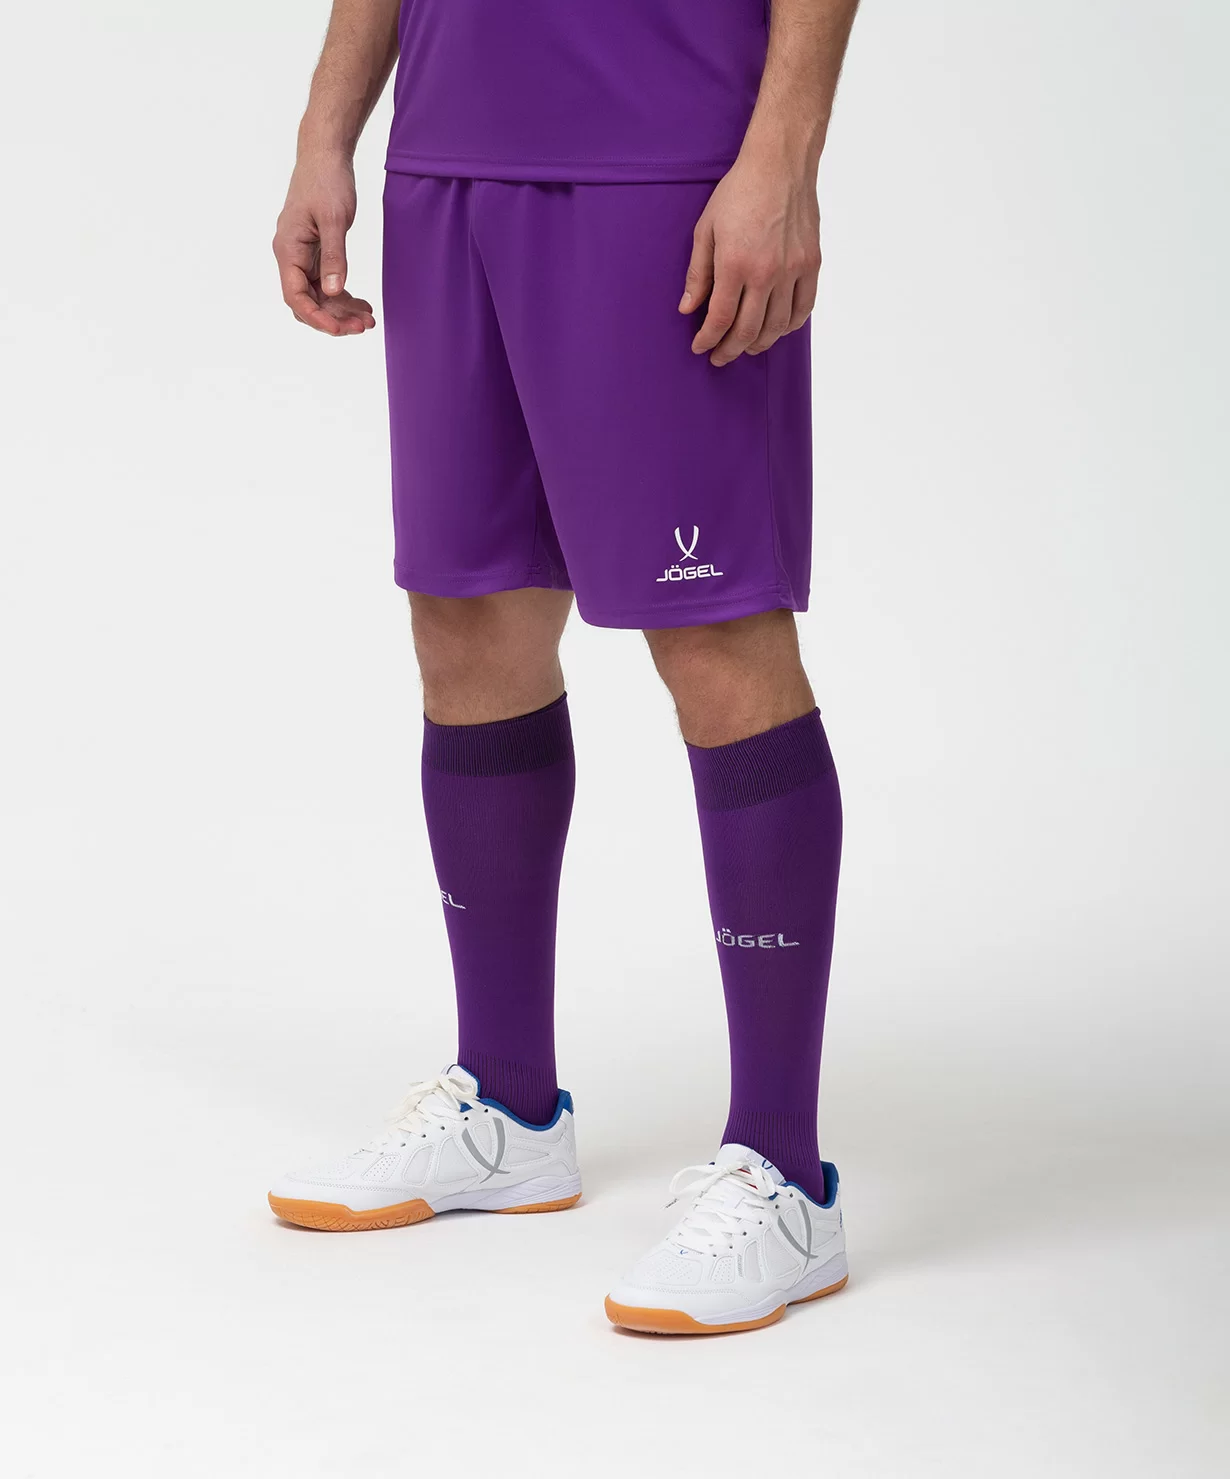 Реальное фото Шорты игровые CAMP Classic Shorts, фиолетовый/белый Jögel от магазина Спортев